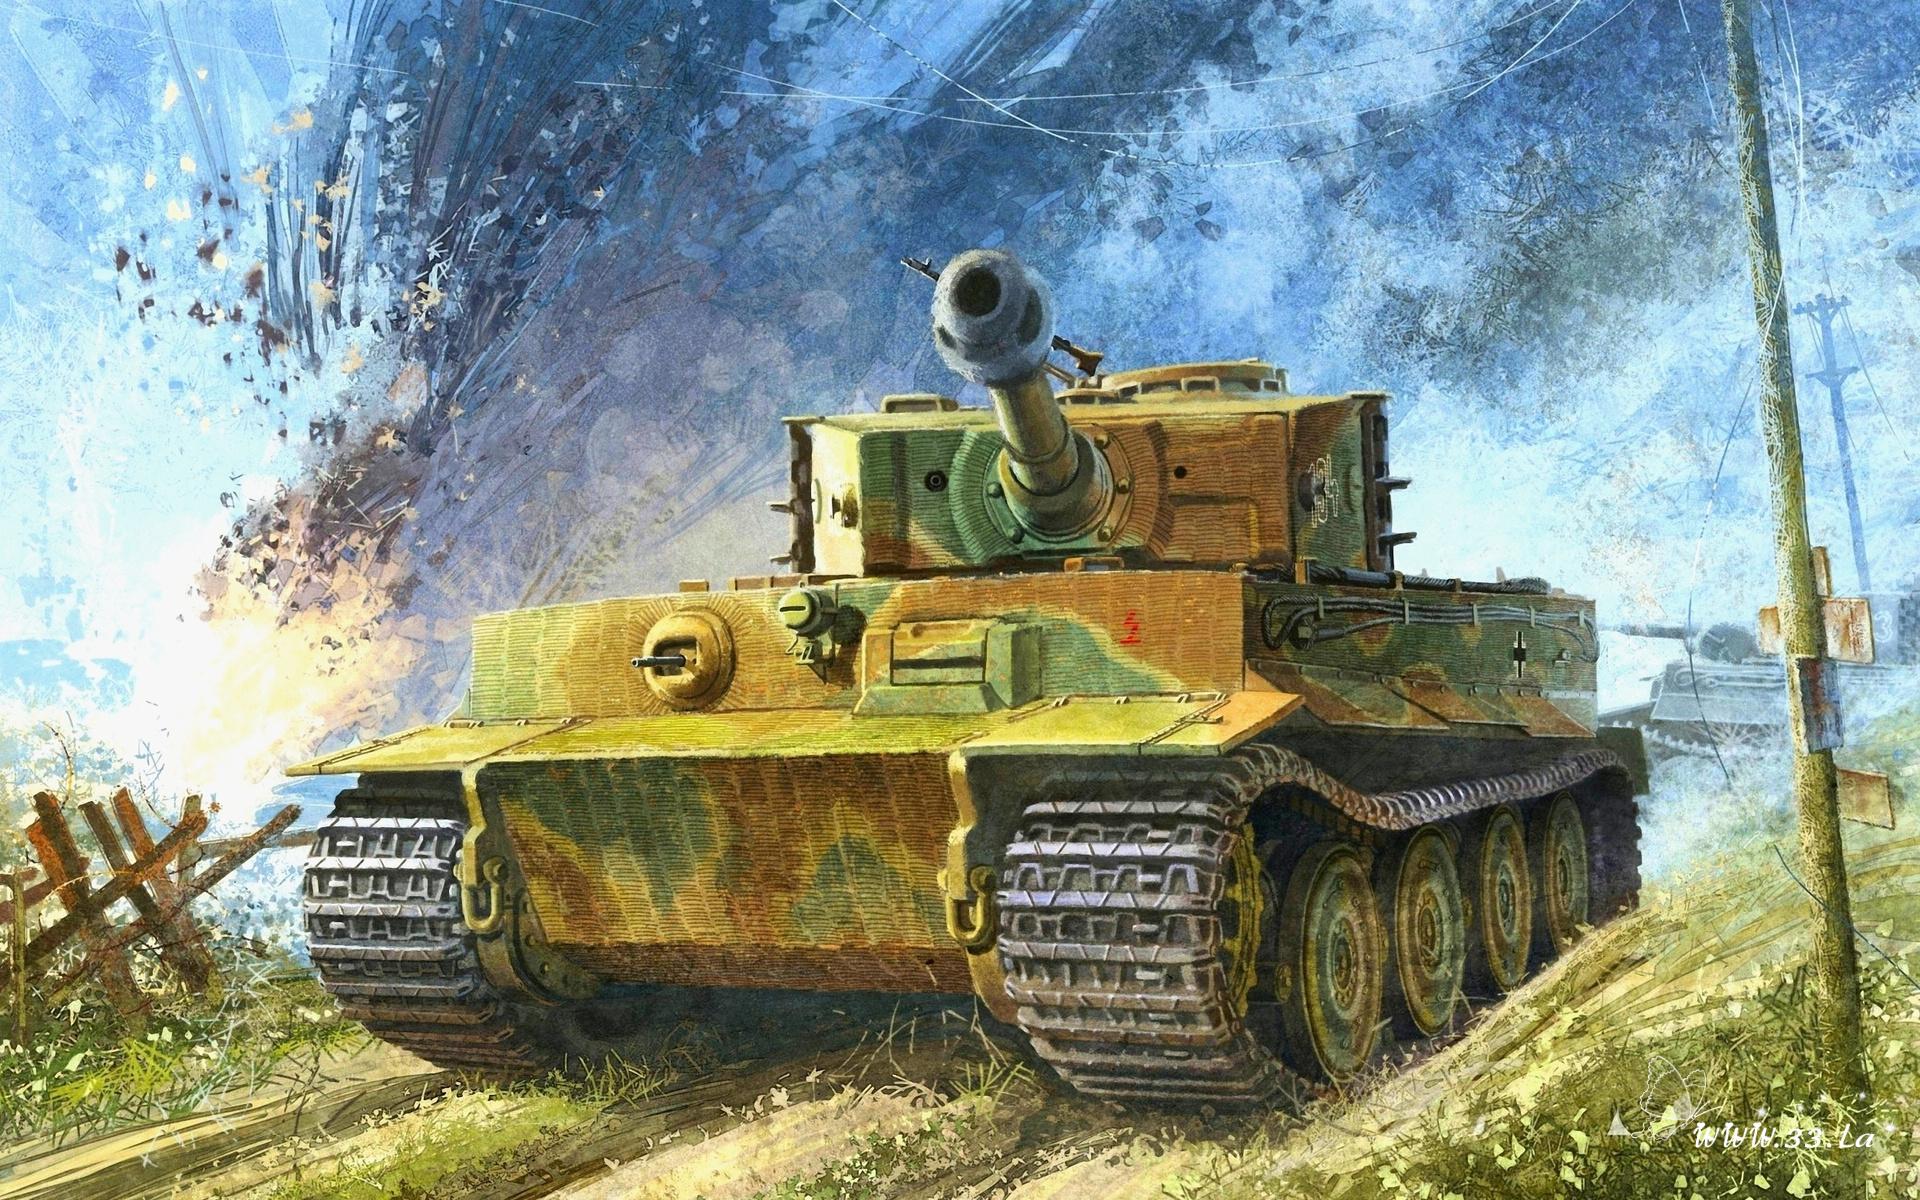 虎式重型坦克(tiger（虎式重型坦克）)